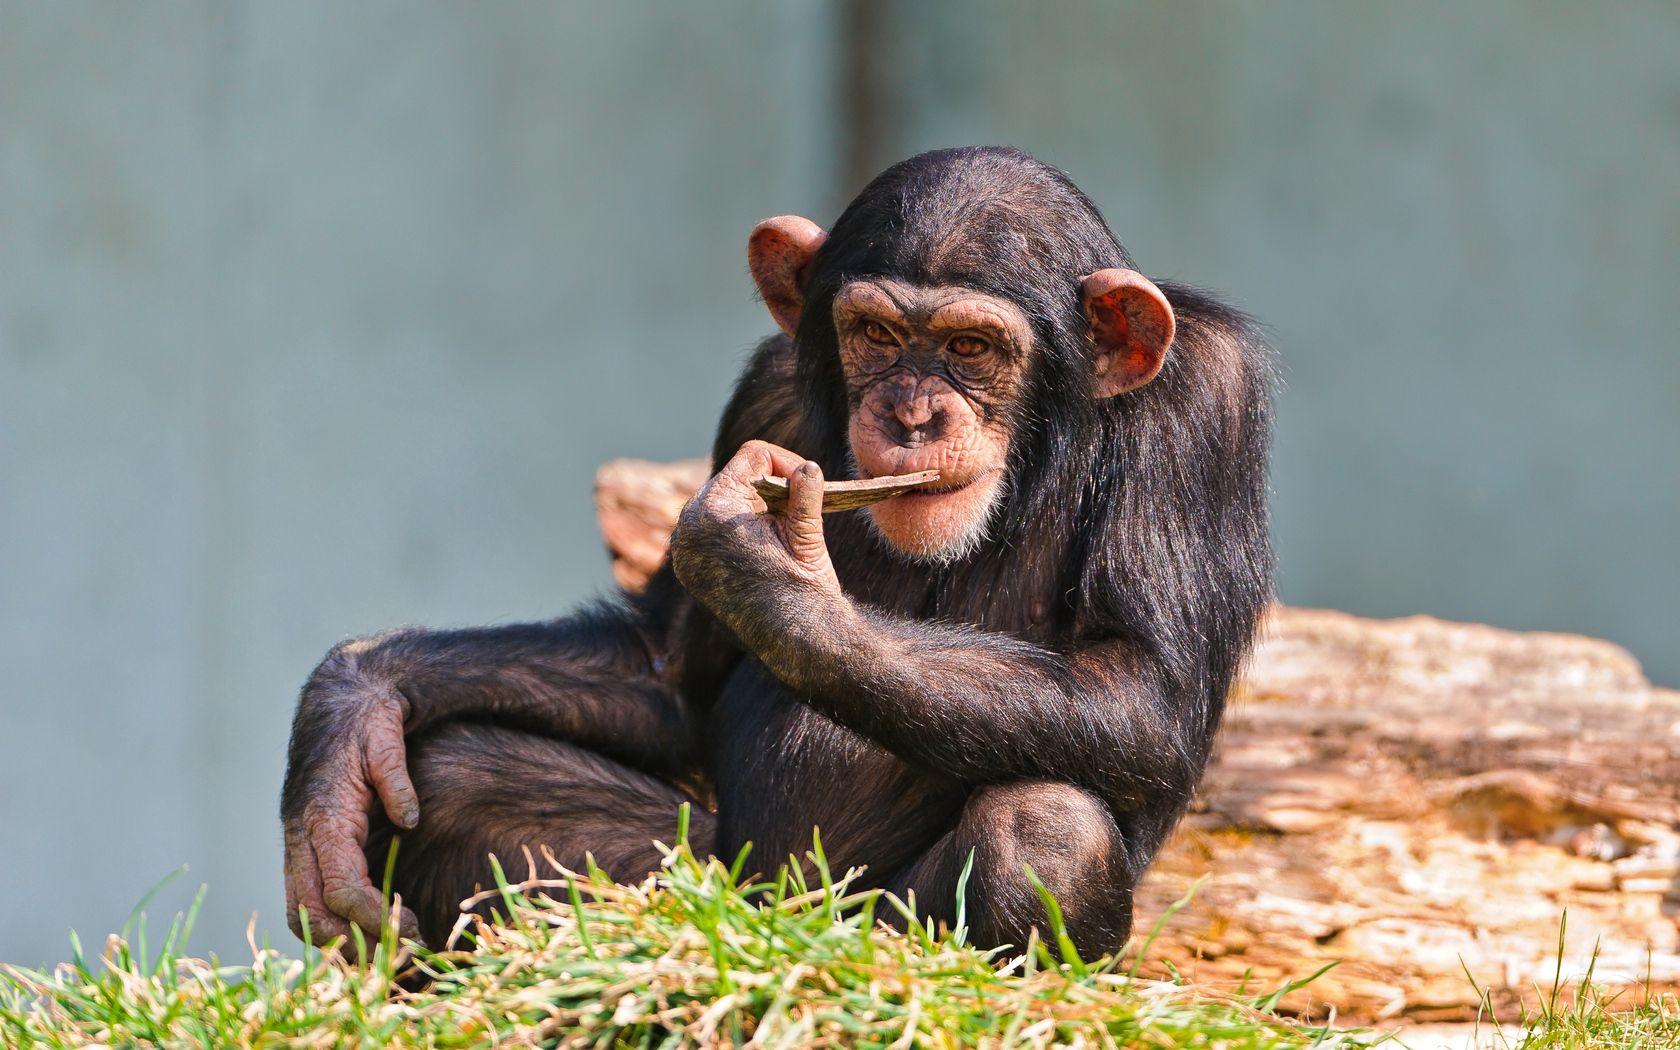 Скачать обои Шимпанзе на телефон бесплатно